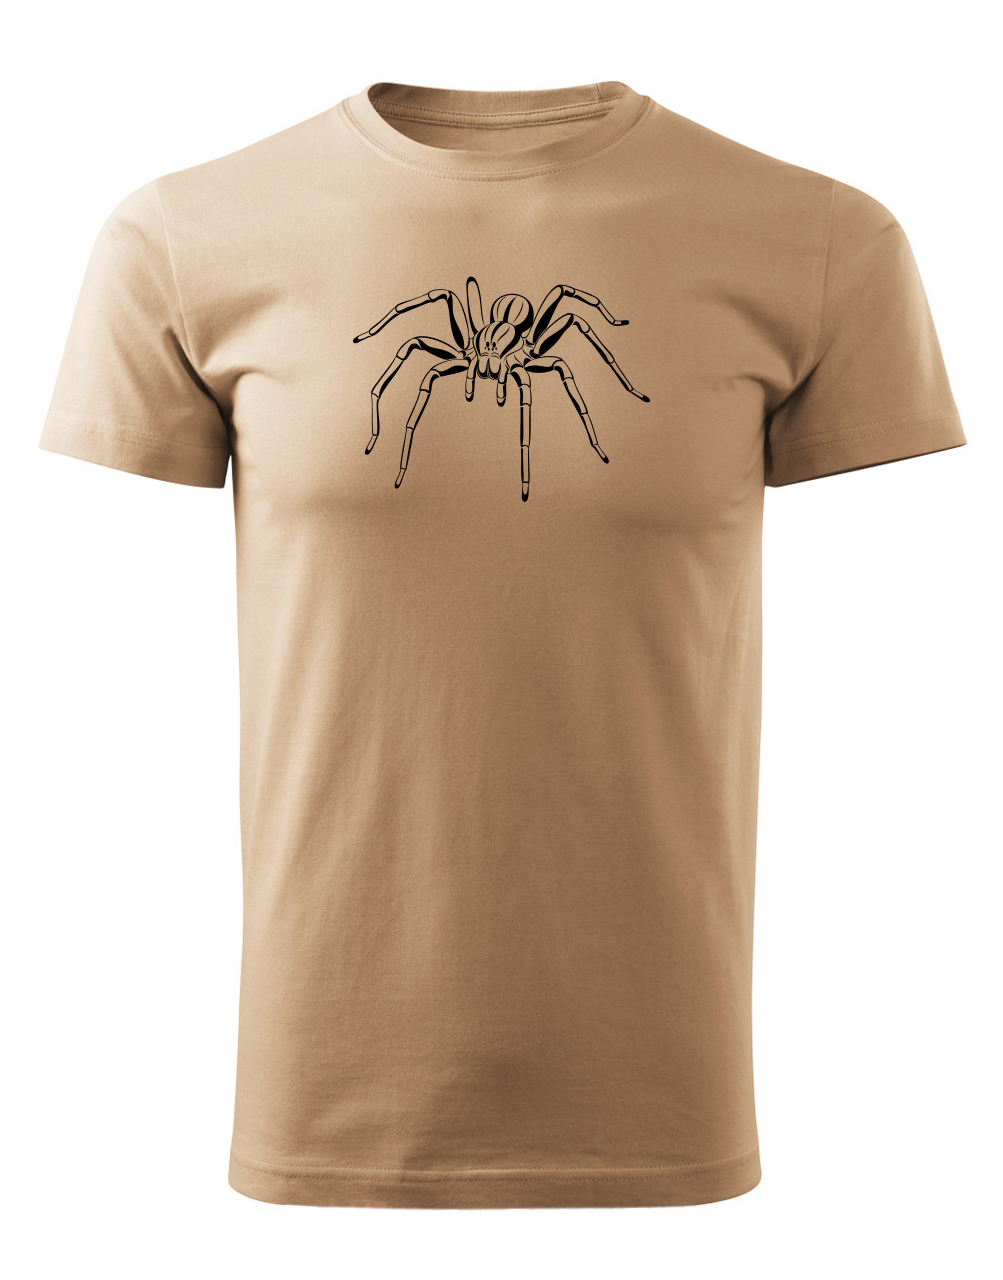 Pánské tričko s potiskem Pavouk písková